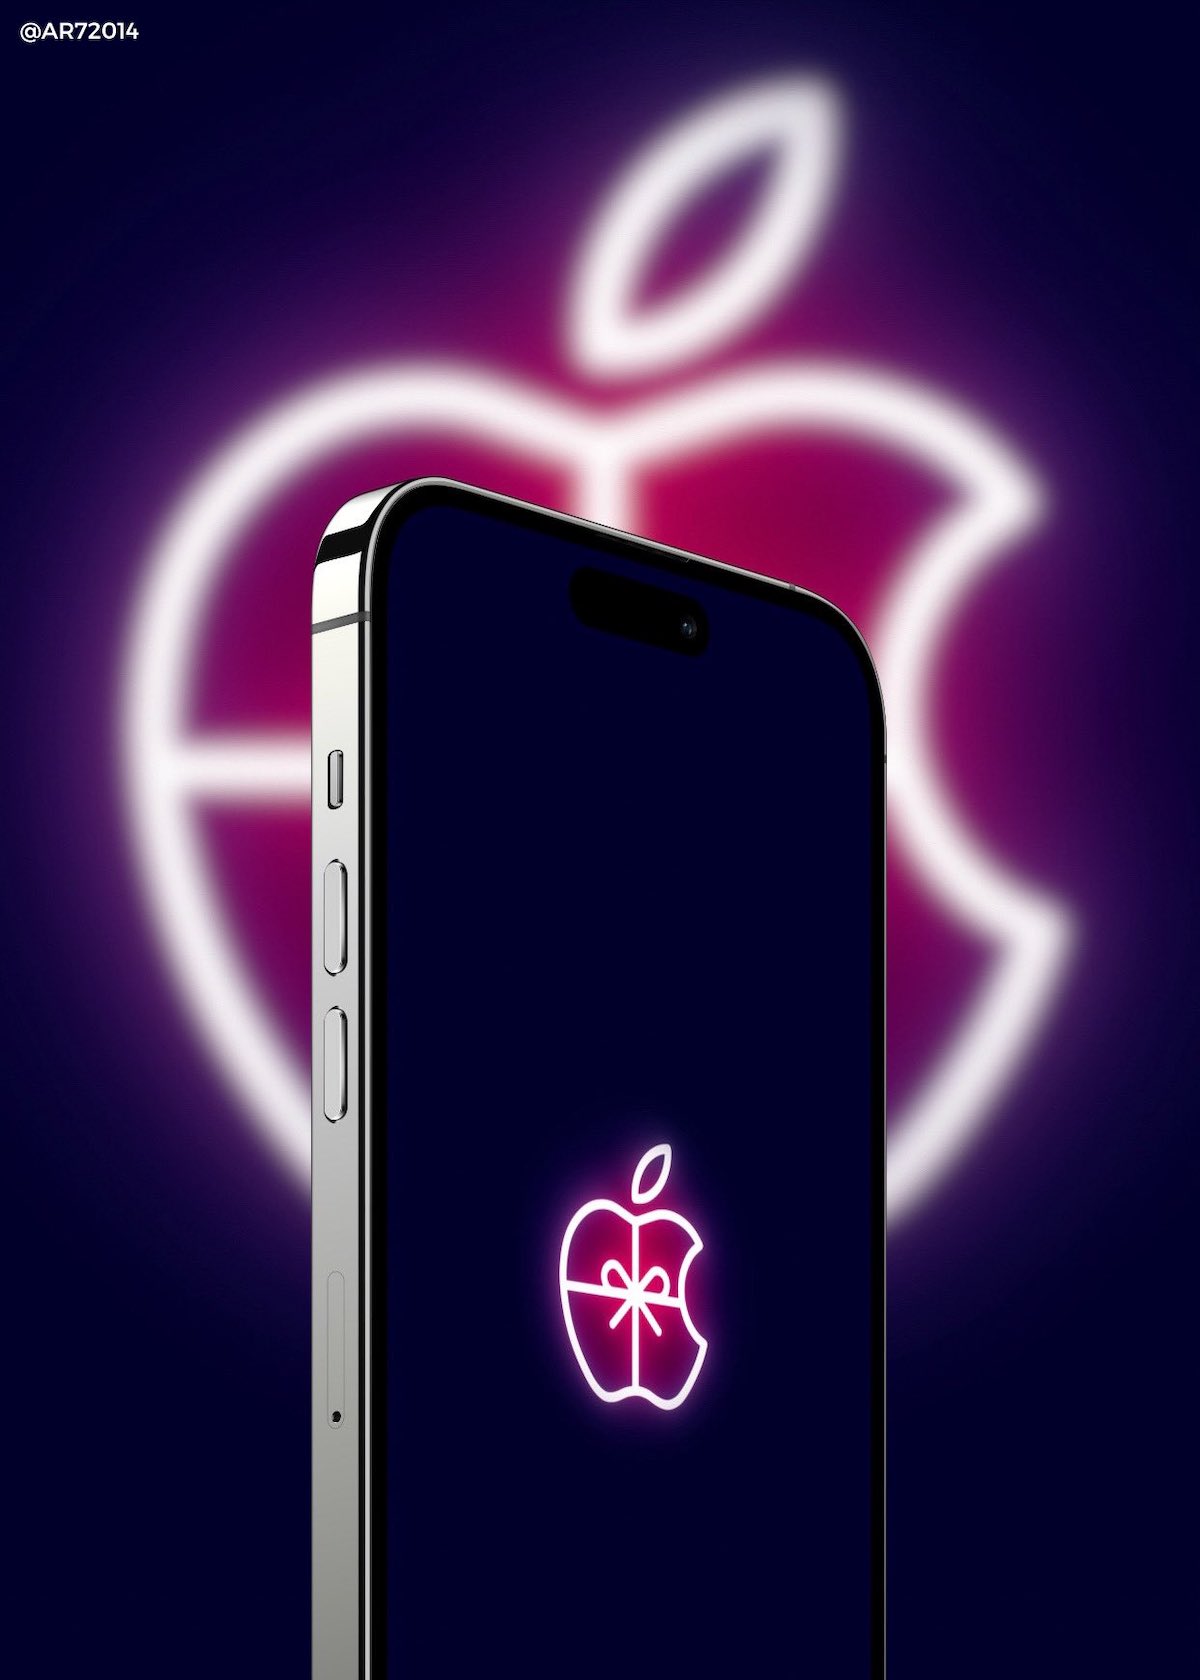 Appleのクリスマスシーズンロゴ壁紙が制作公開 Iphone Ipad Mac向け Iphone Mania